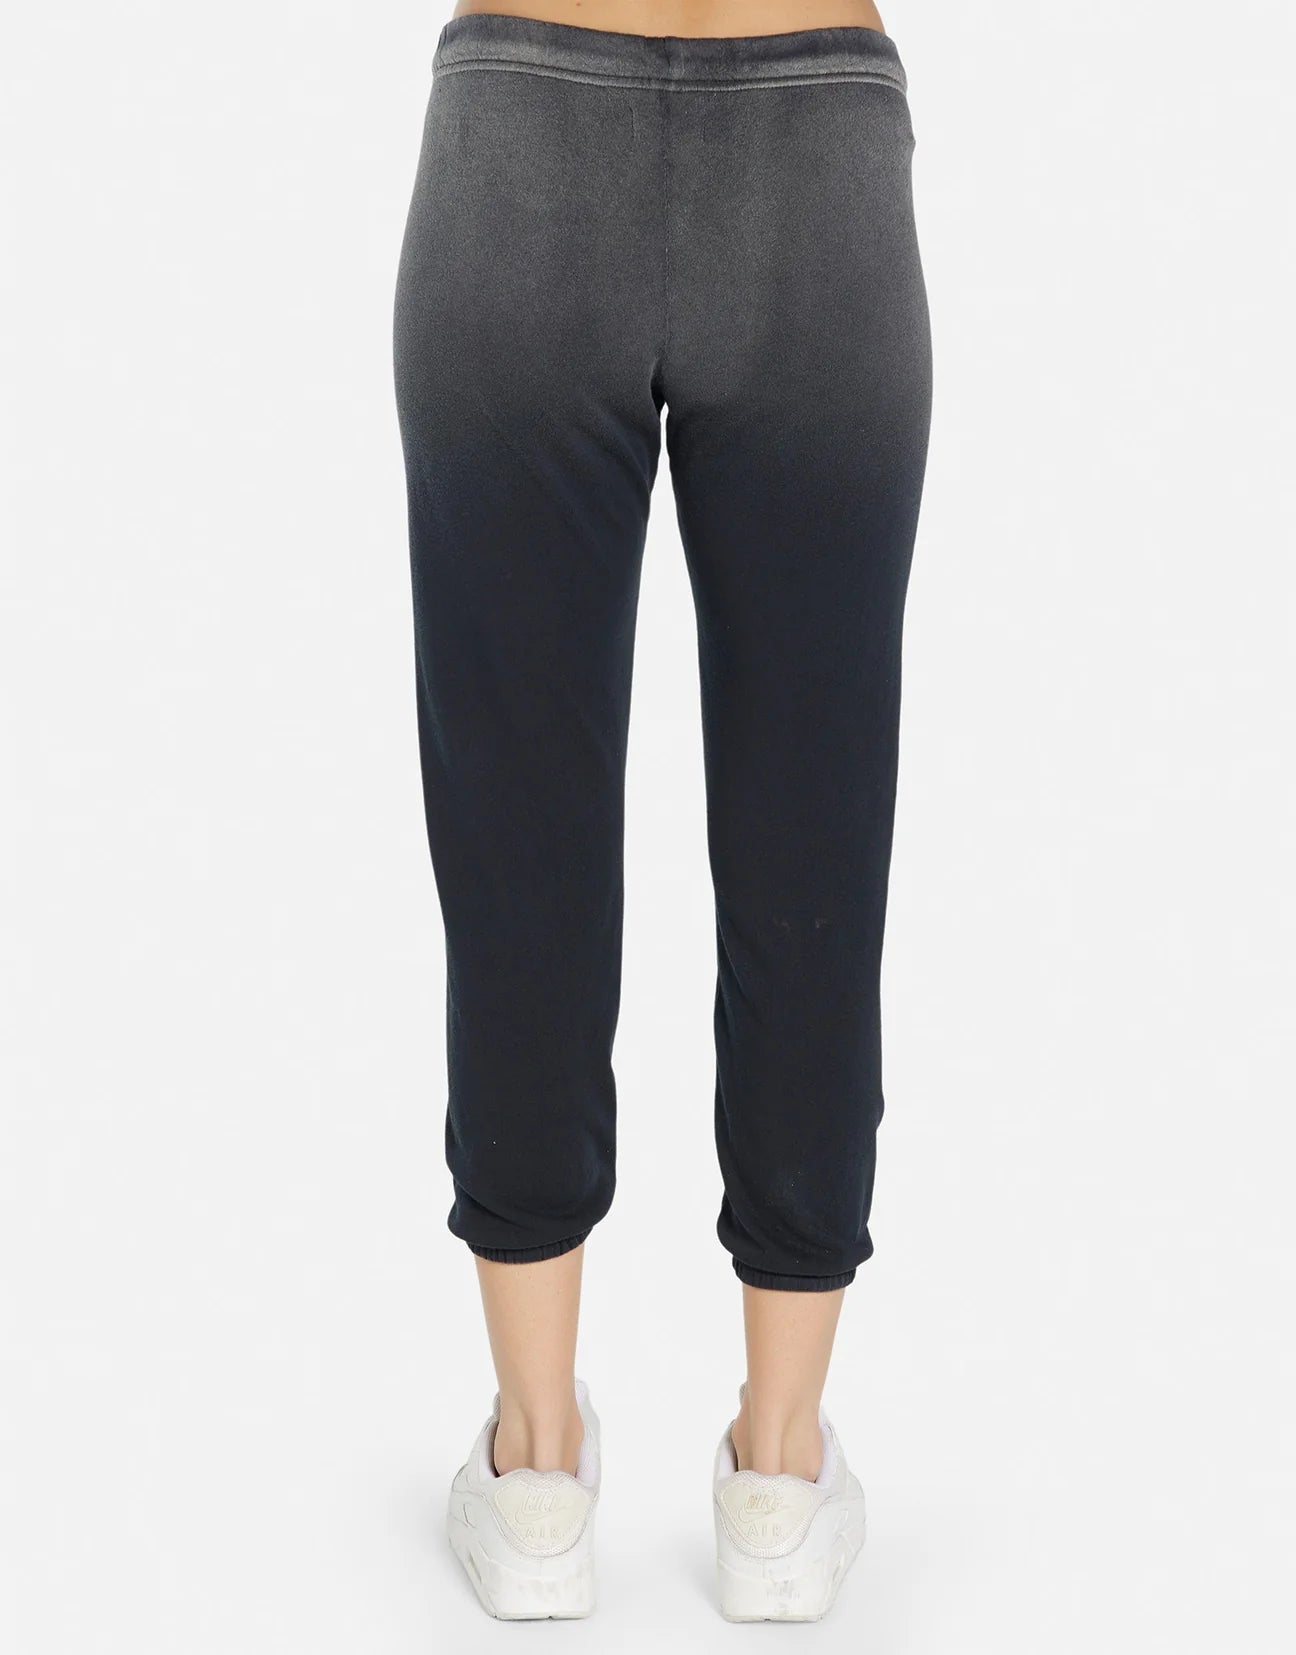 Shop Lauren Moshi Alana Wild Wolf Sweatpants - Premium Jogging Pants from Lauren Moshi Online now at Spoiled Brat 